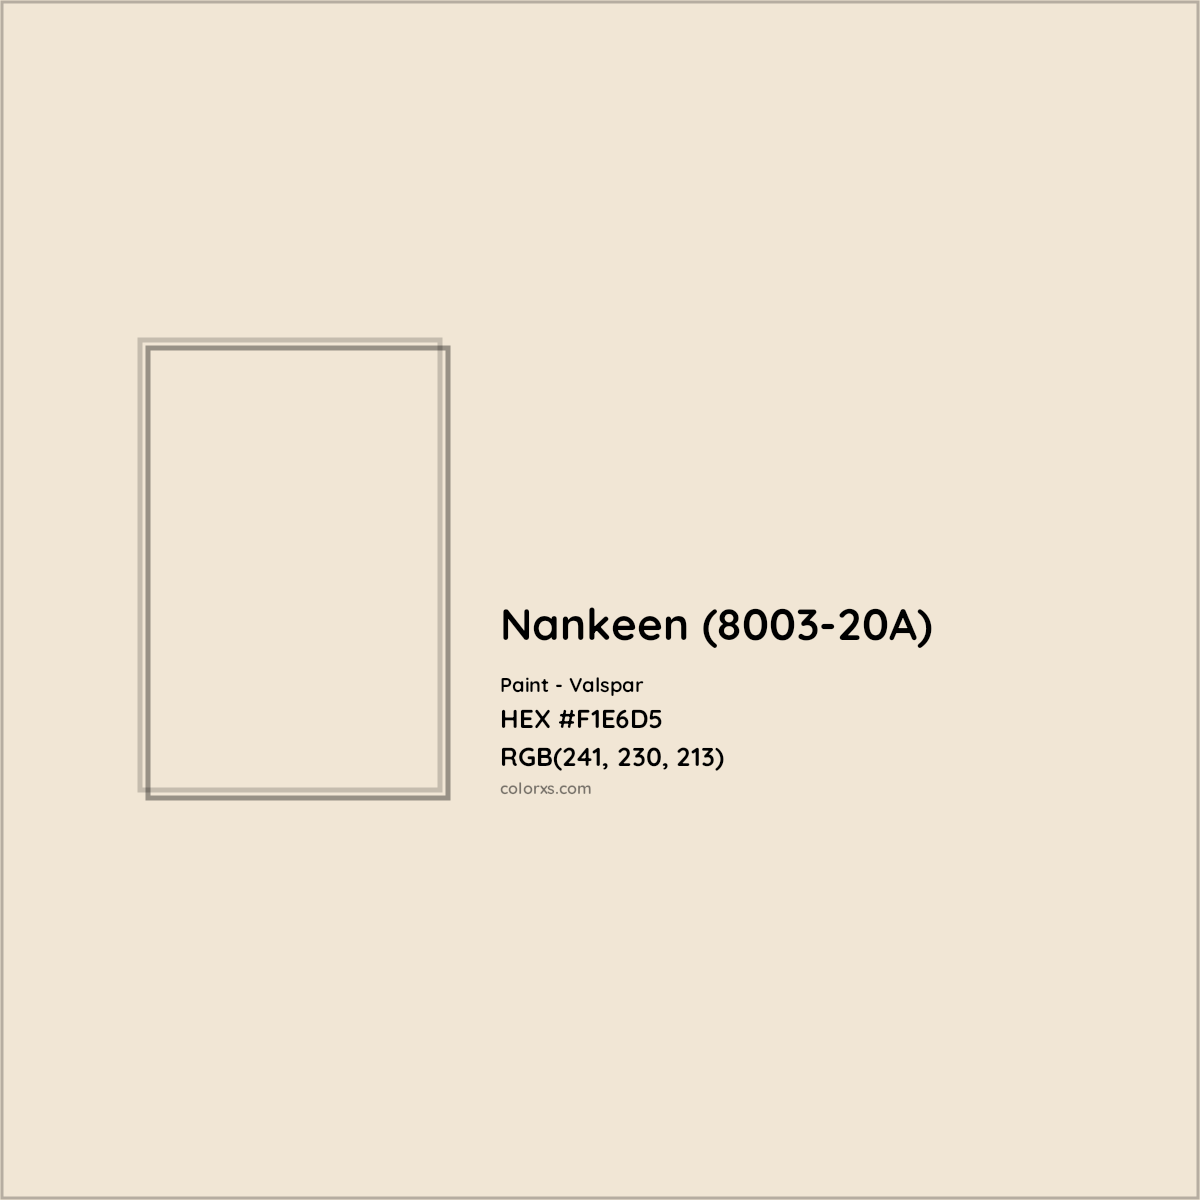 HEX #F1E6D5 Nankeen (8003-20A) Paint Valspar - Color Code